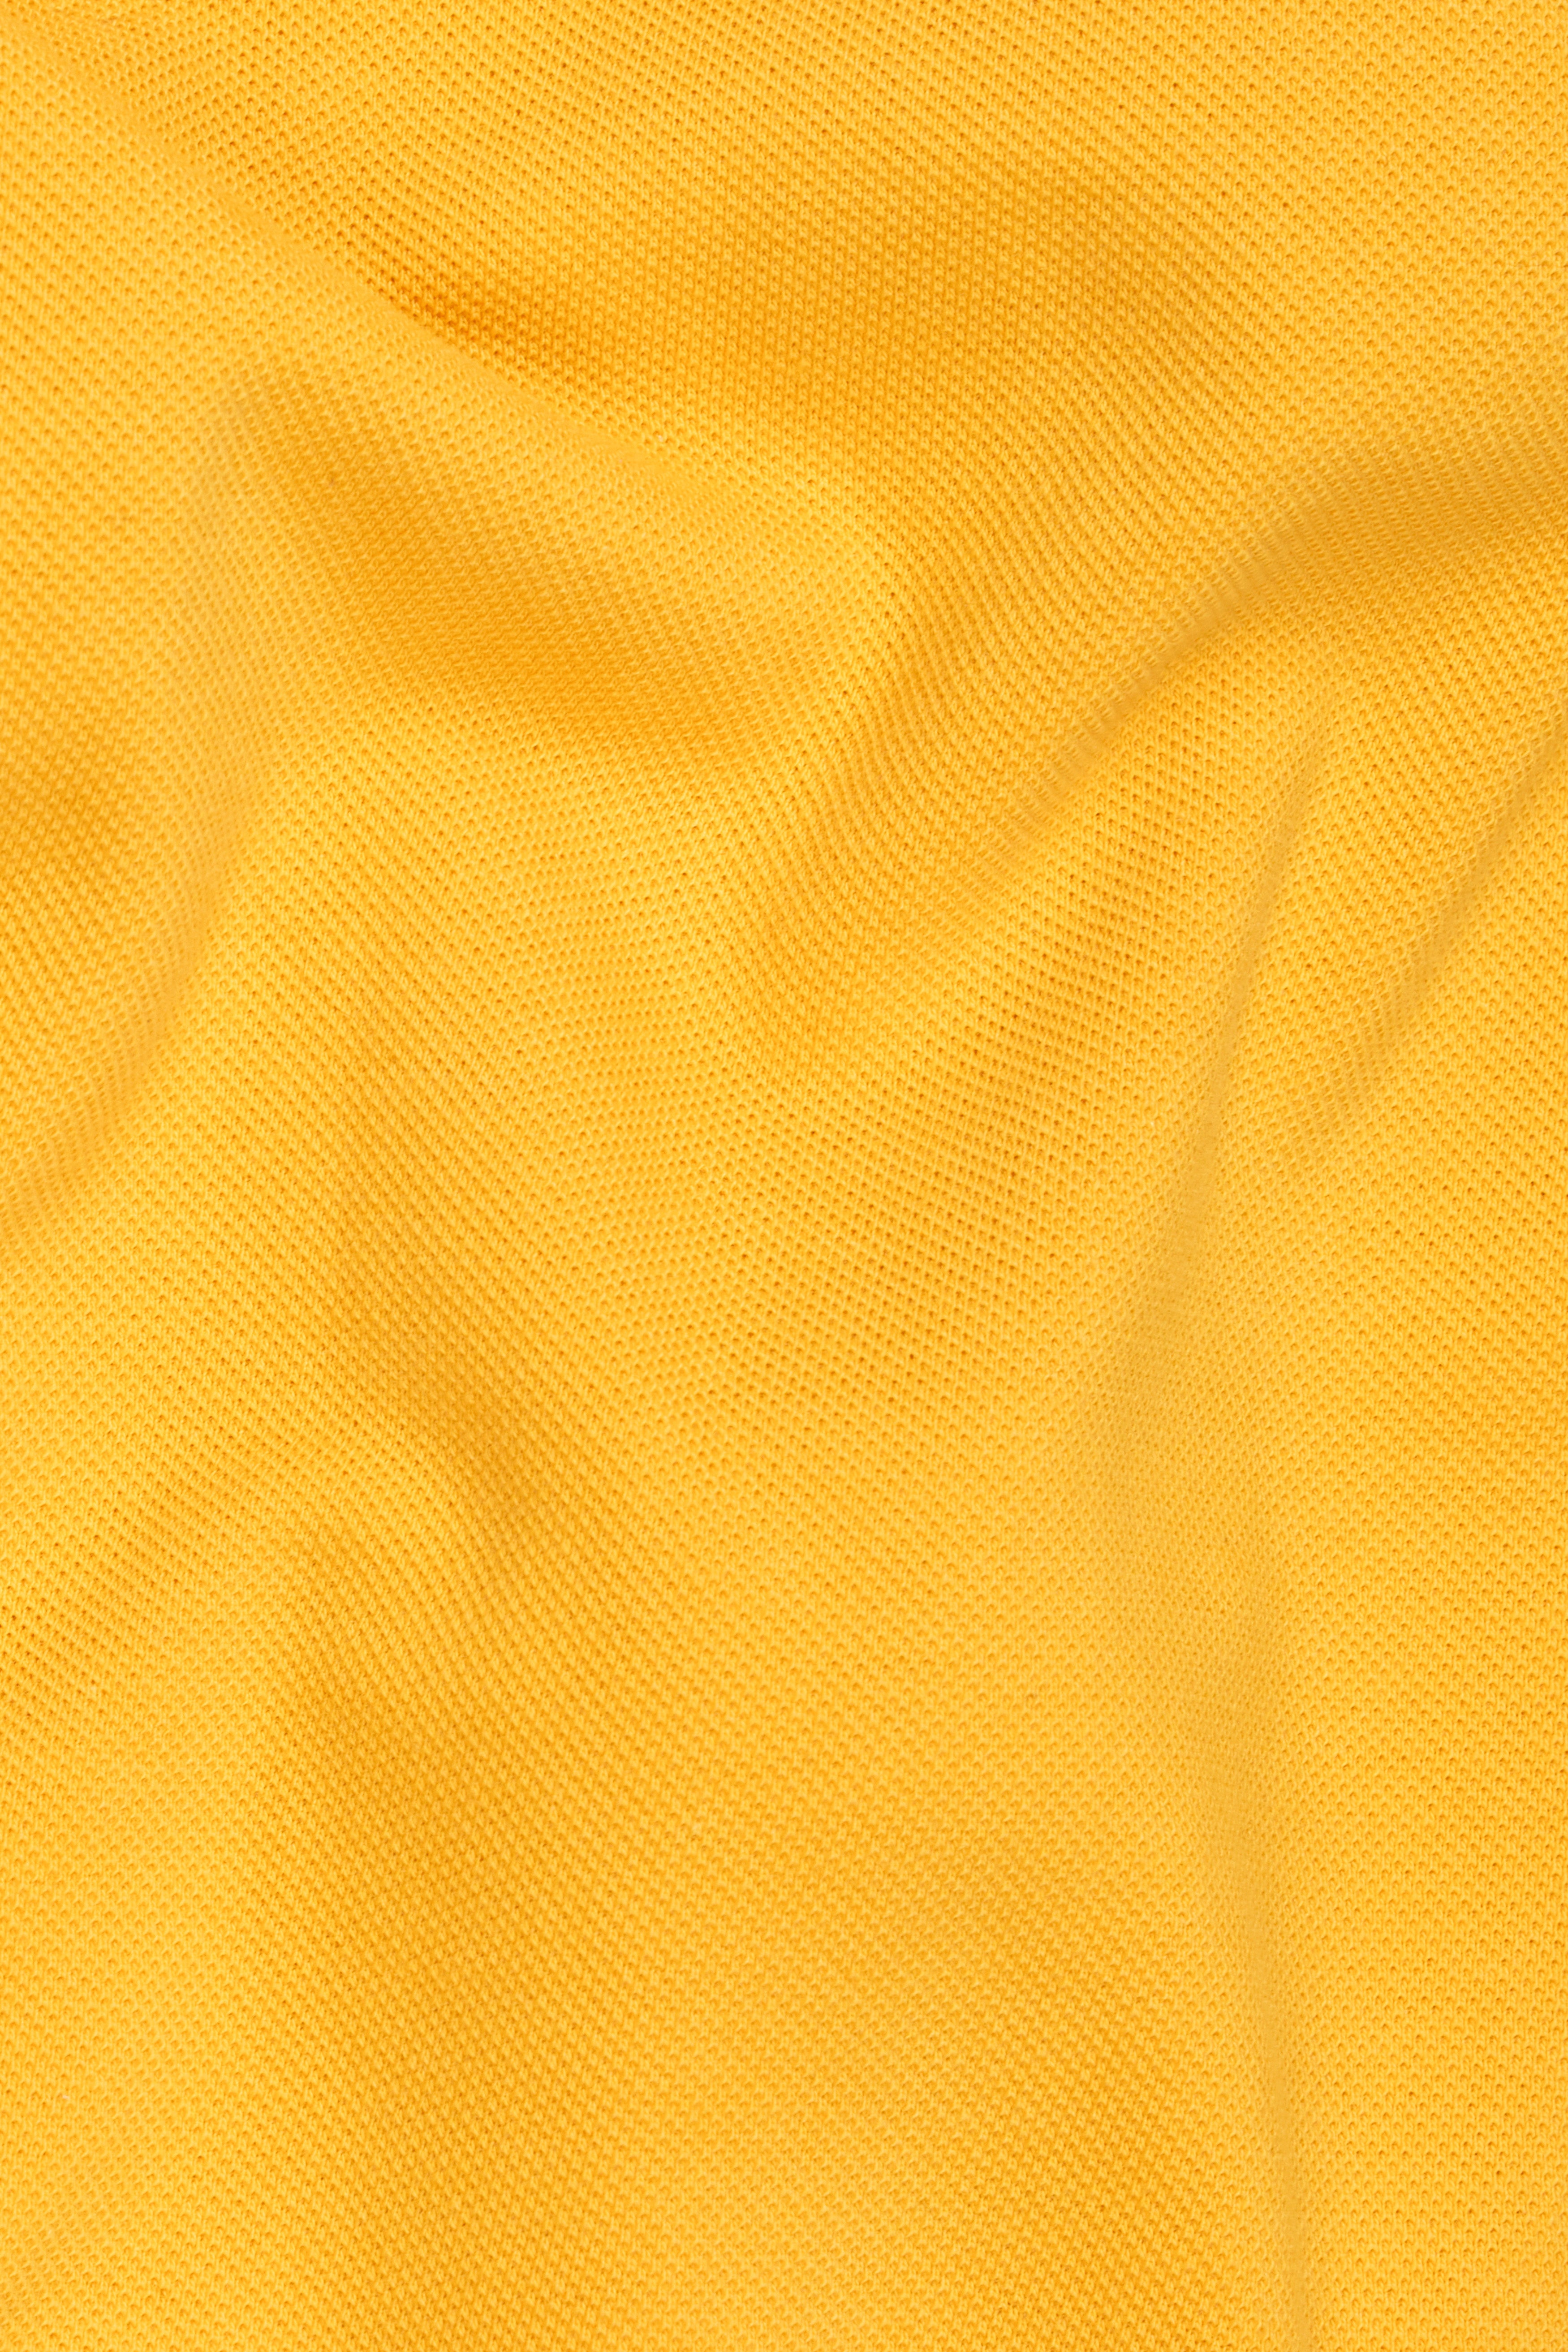 Mikado yellow Premium Cotton Pique Polo TS955-S, TS955-M, TS955-L, TS955-XL, TS955-XXL